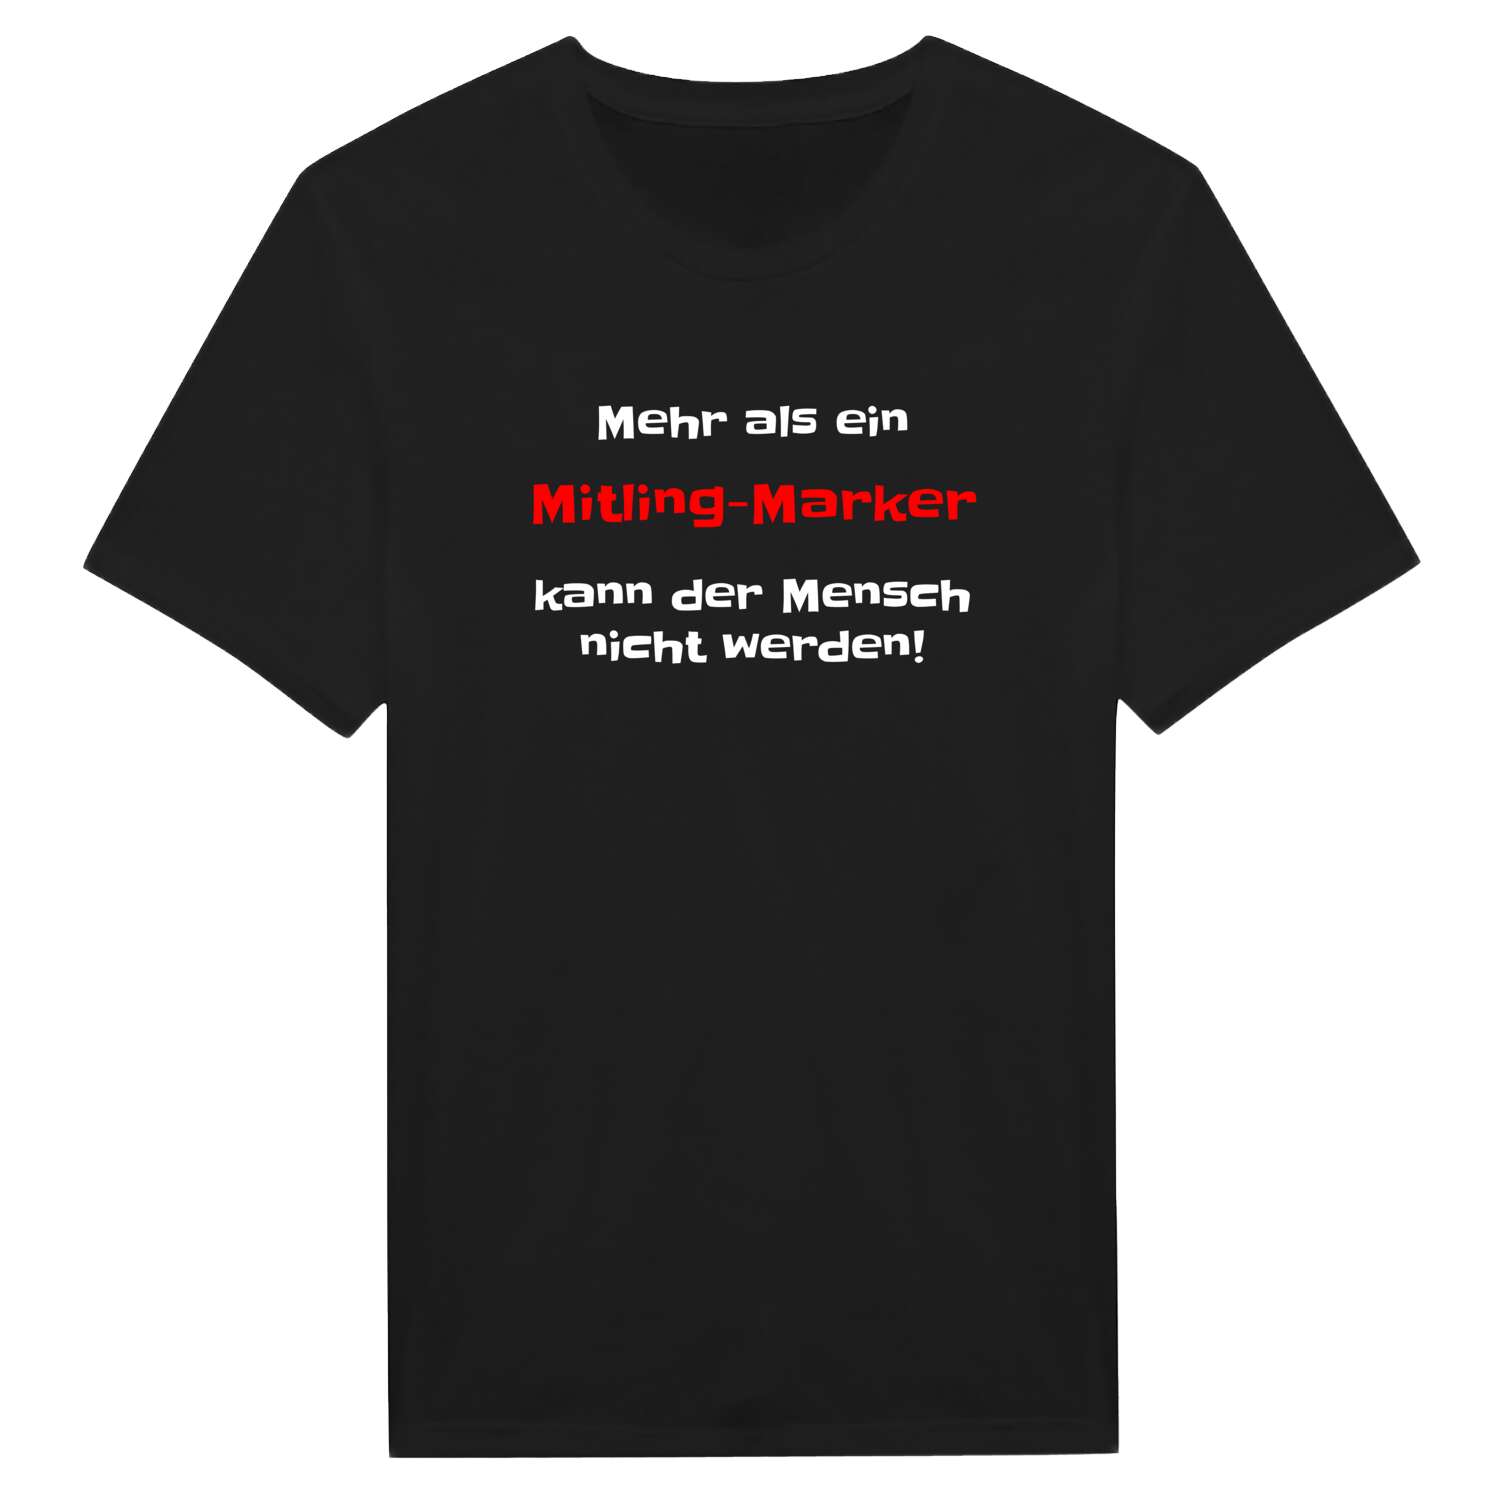 Mitling-Mark T-Shirt »Mehr als ein«